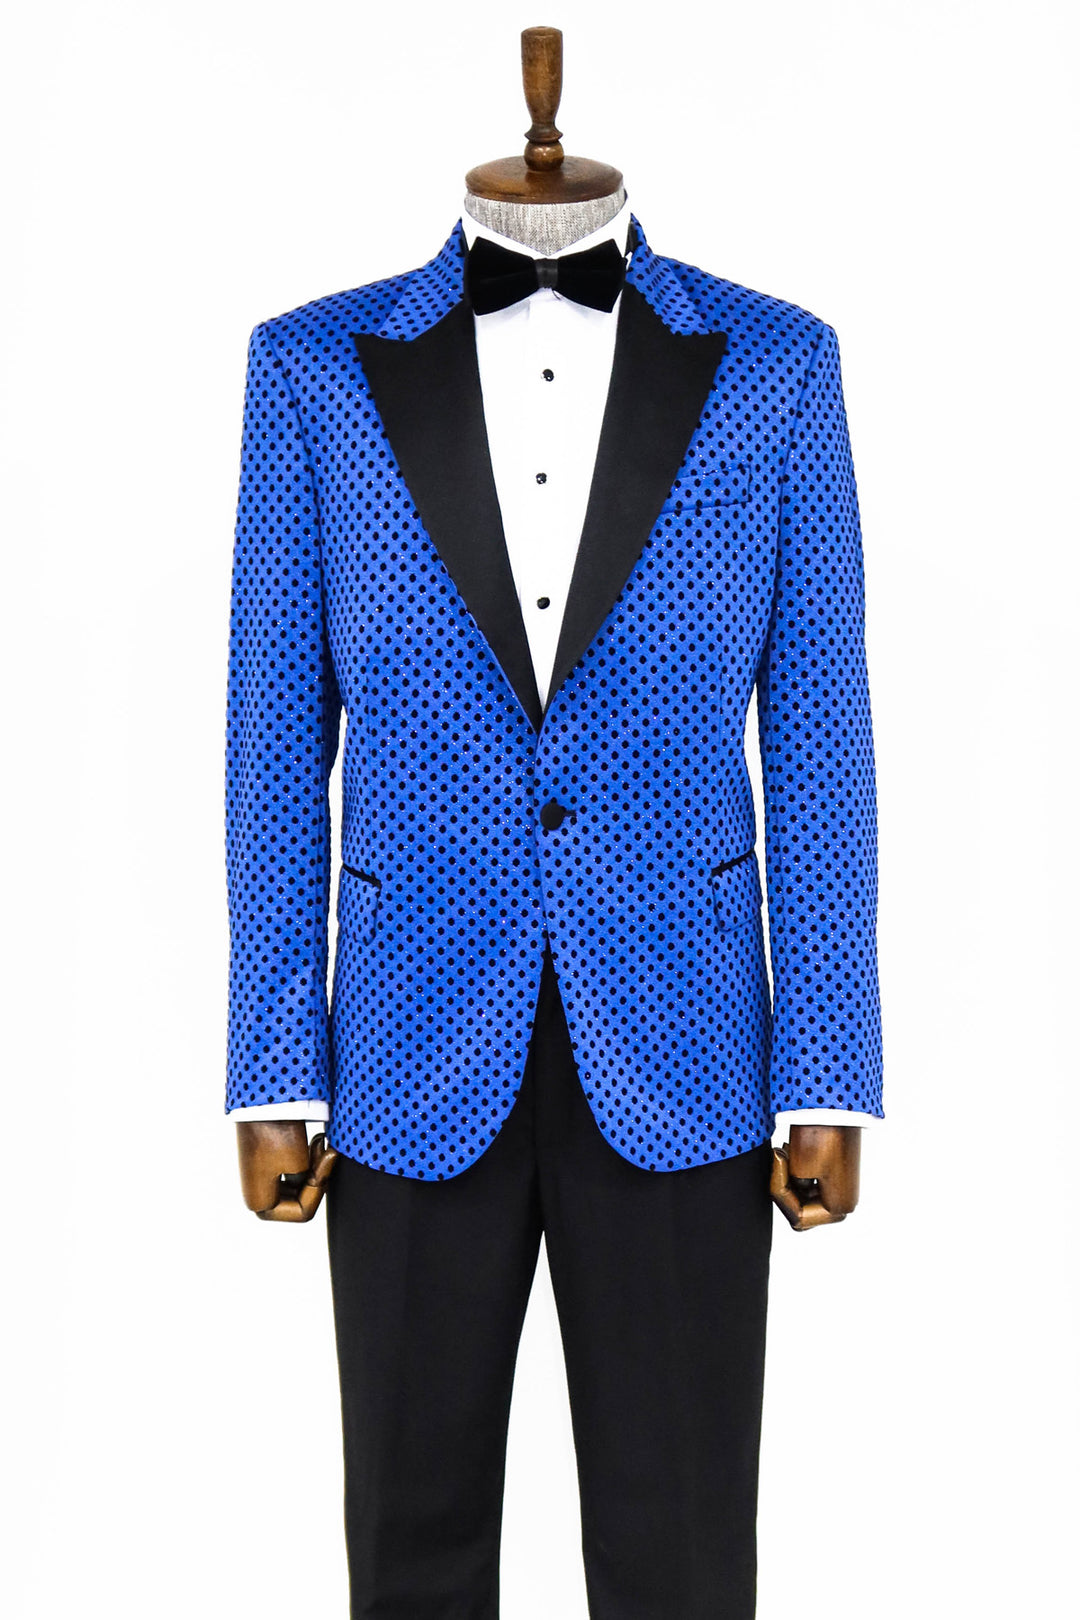 Sequin Dot Patterned Sax Blue Men Prom Blazer - Wessi